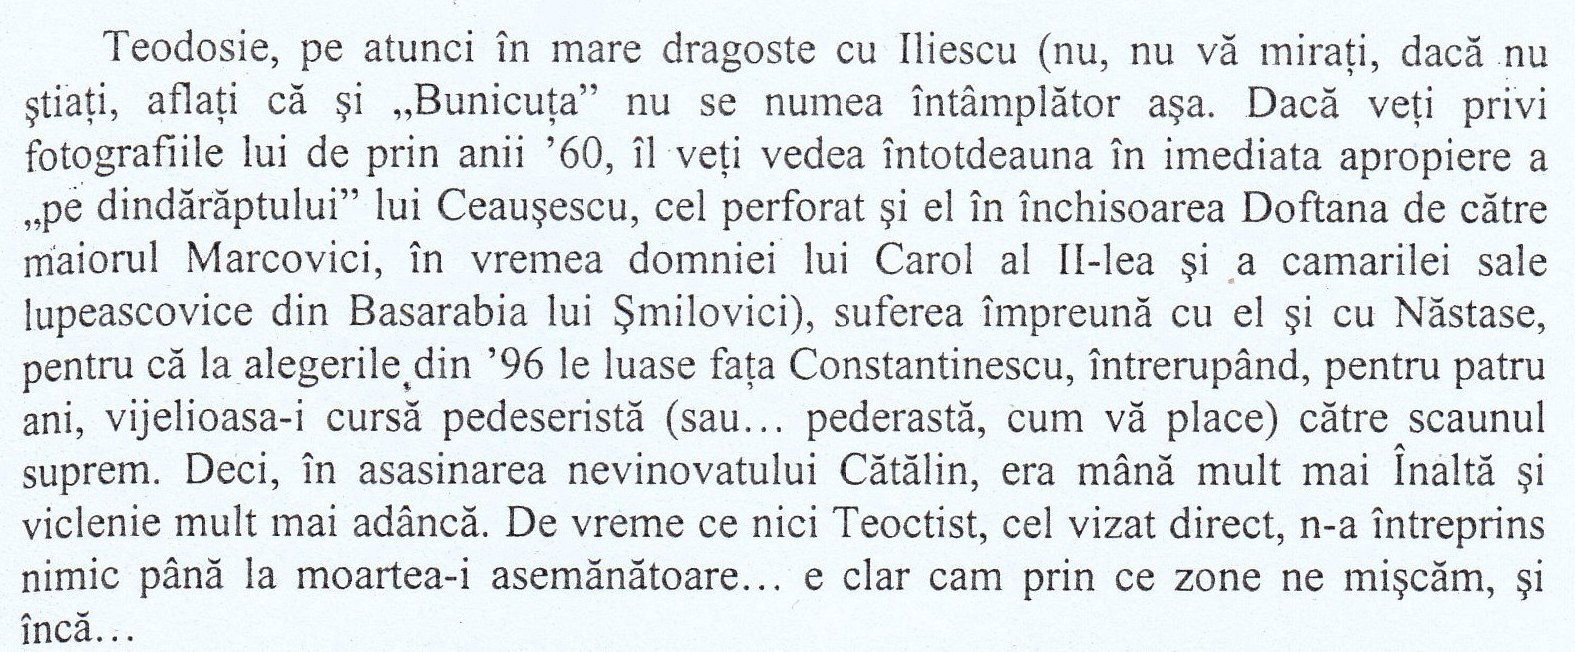 Relatare despre relația lui Teodosie cu Ion Iliescu (pag. 109 din cartea "Fascinația haosului").